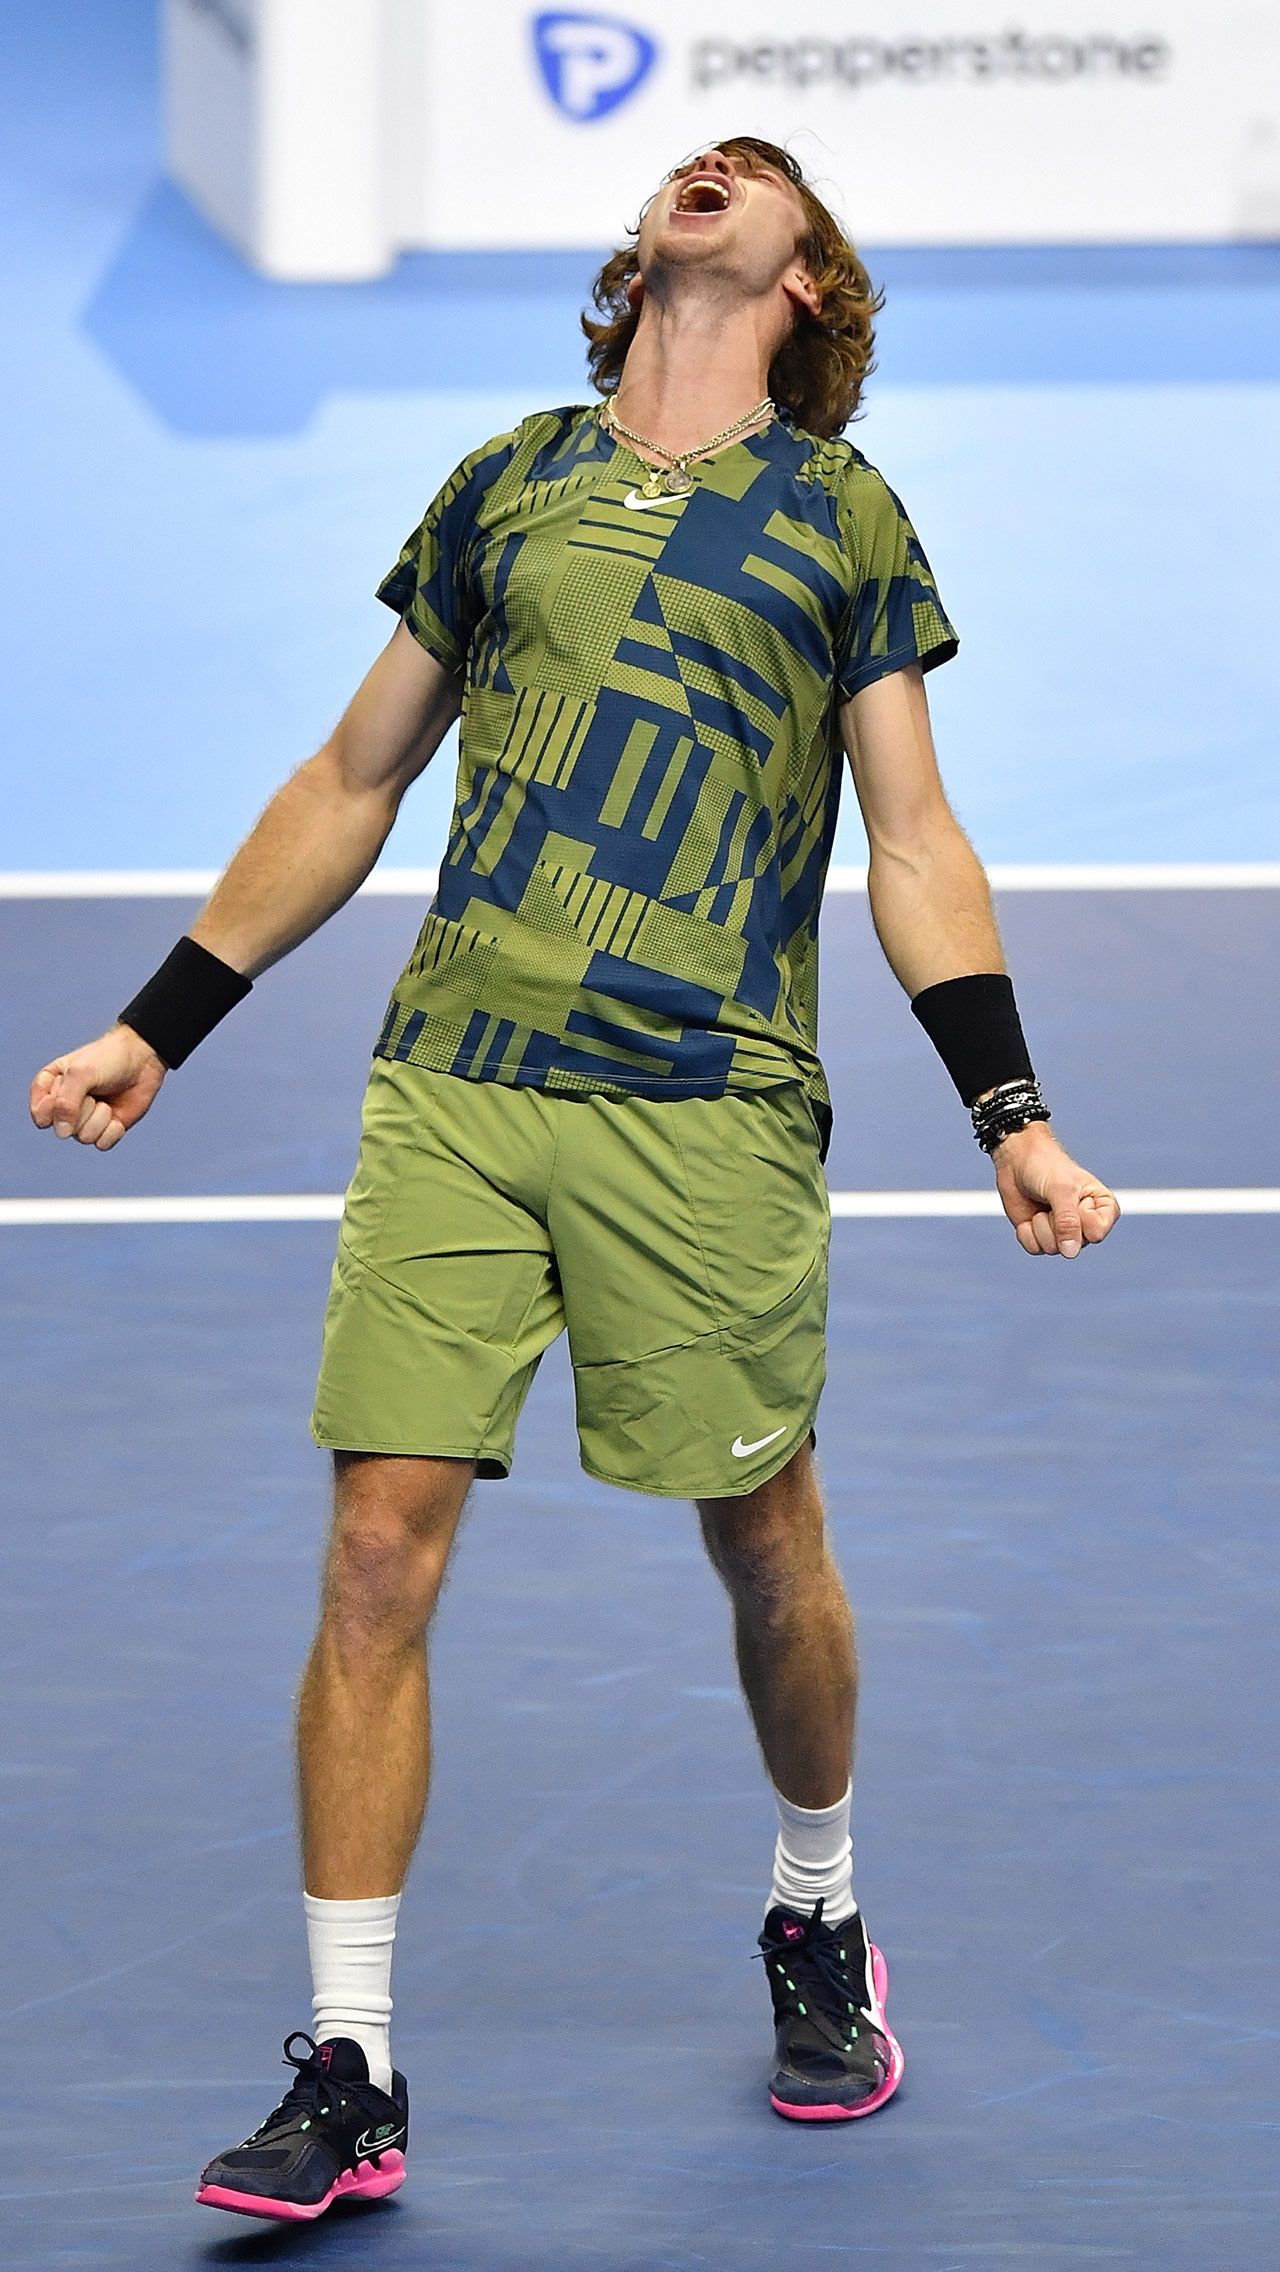 В 2022-м Медведев и Рублёв снова вместе пробились на Итоговый чемпионат ATP, но если Андрей впервые в карьере смог выйти в плей-офф, то Даниил проиграл все три матча в группе.